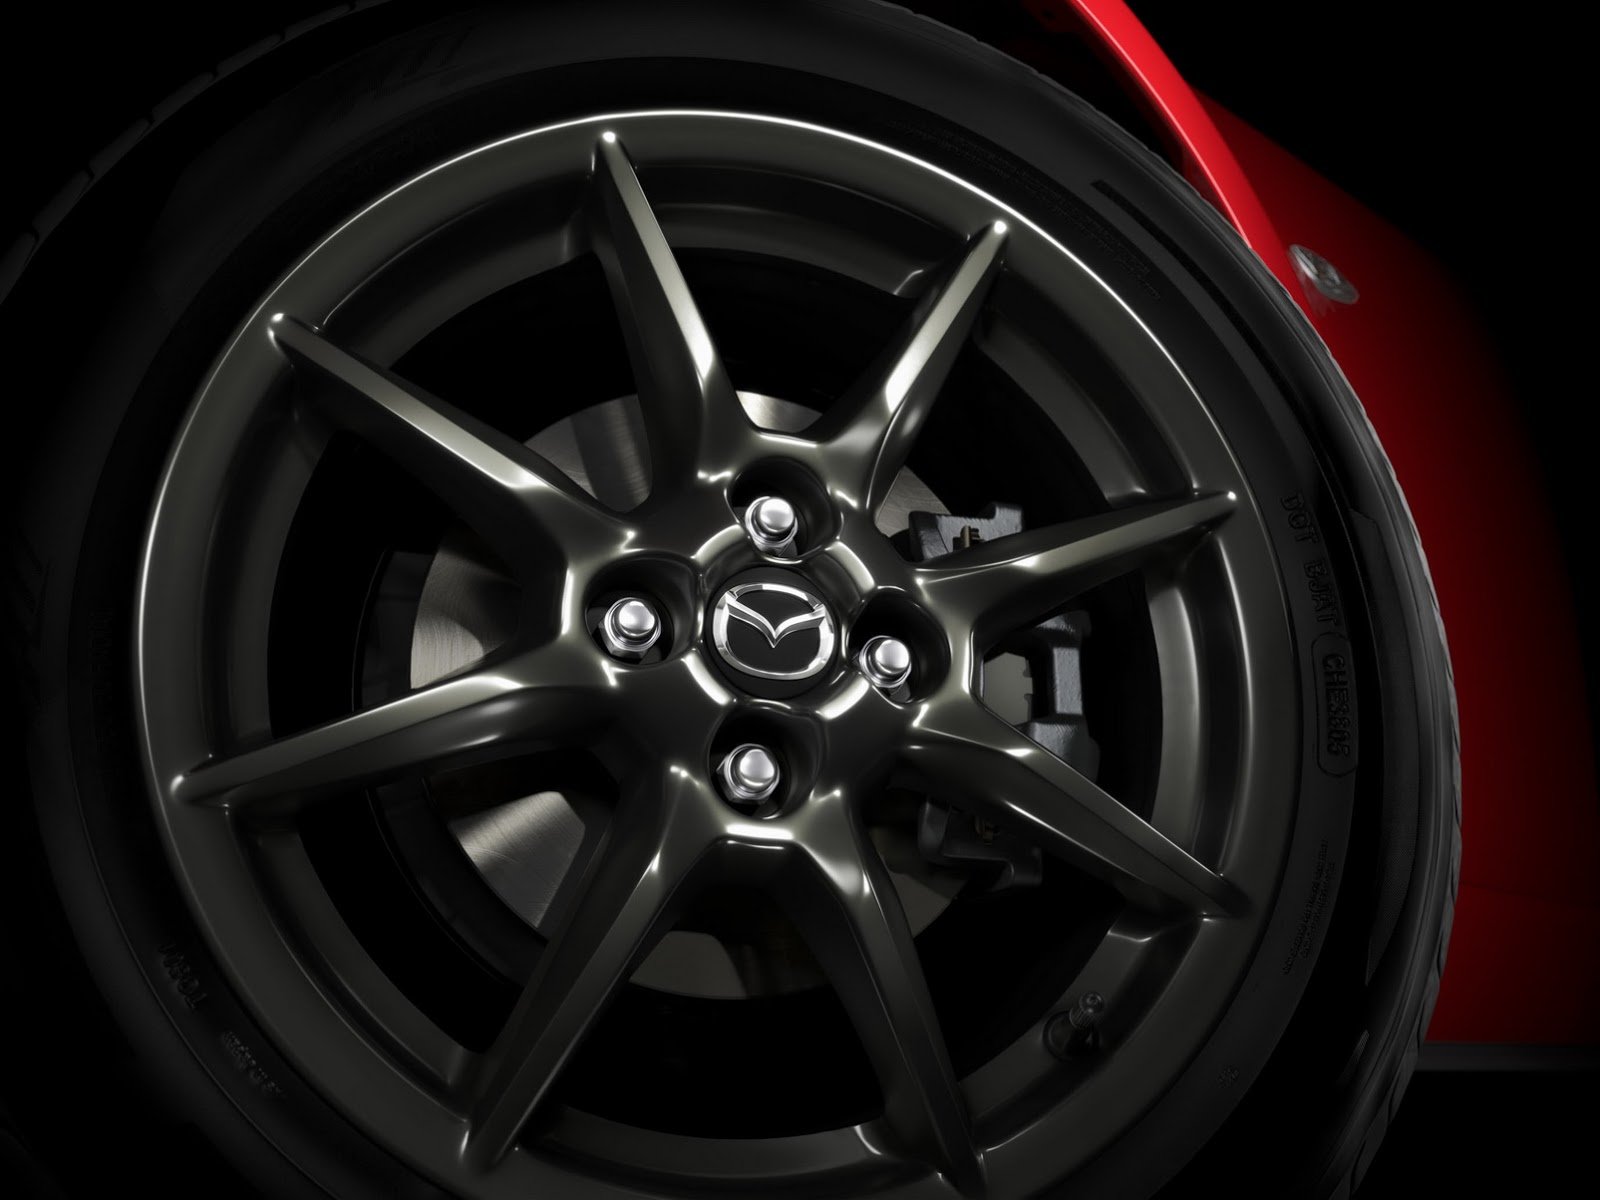 2015, Mazda, Mx 5, Roadster, Japan, Red, Rosso Wallpaper